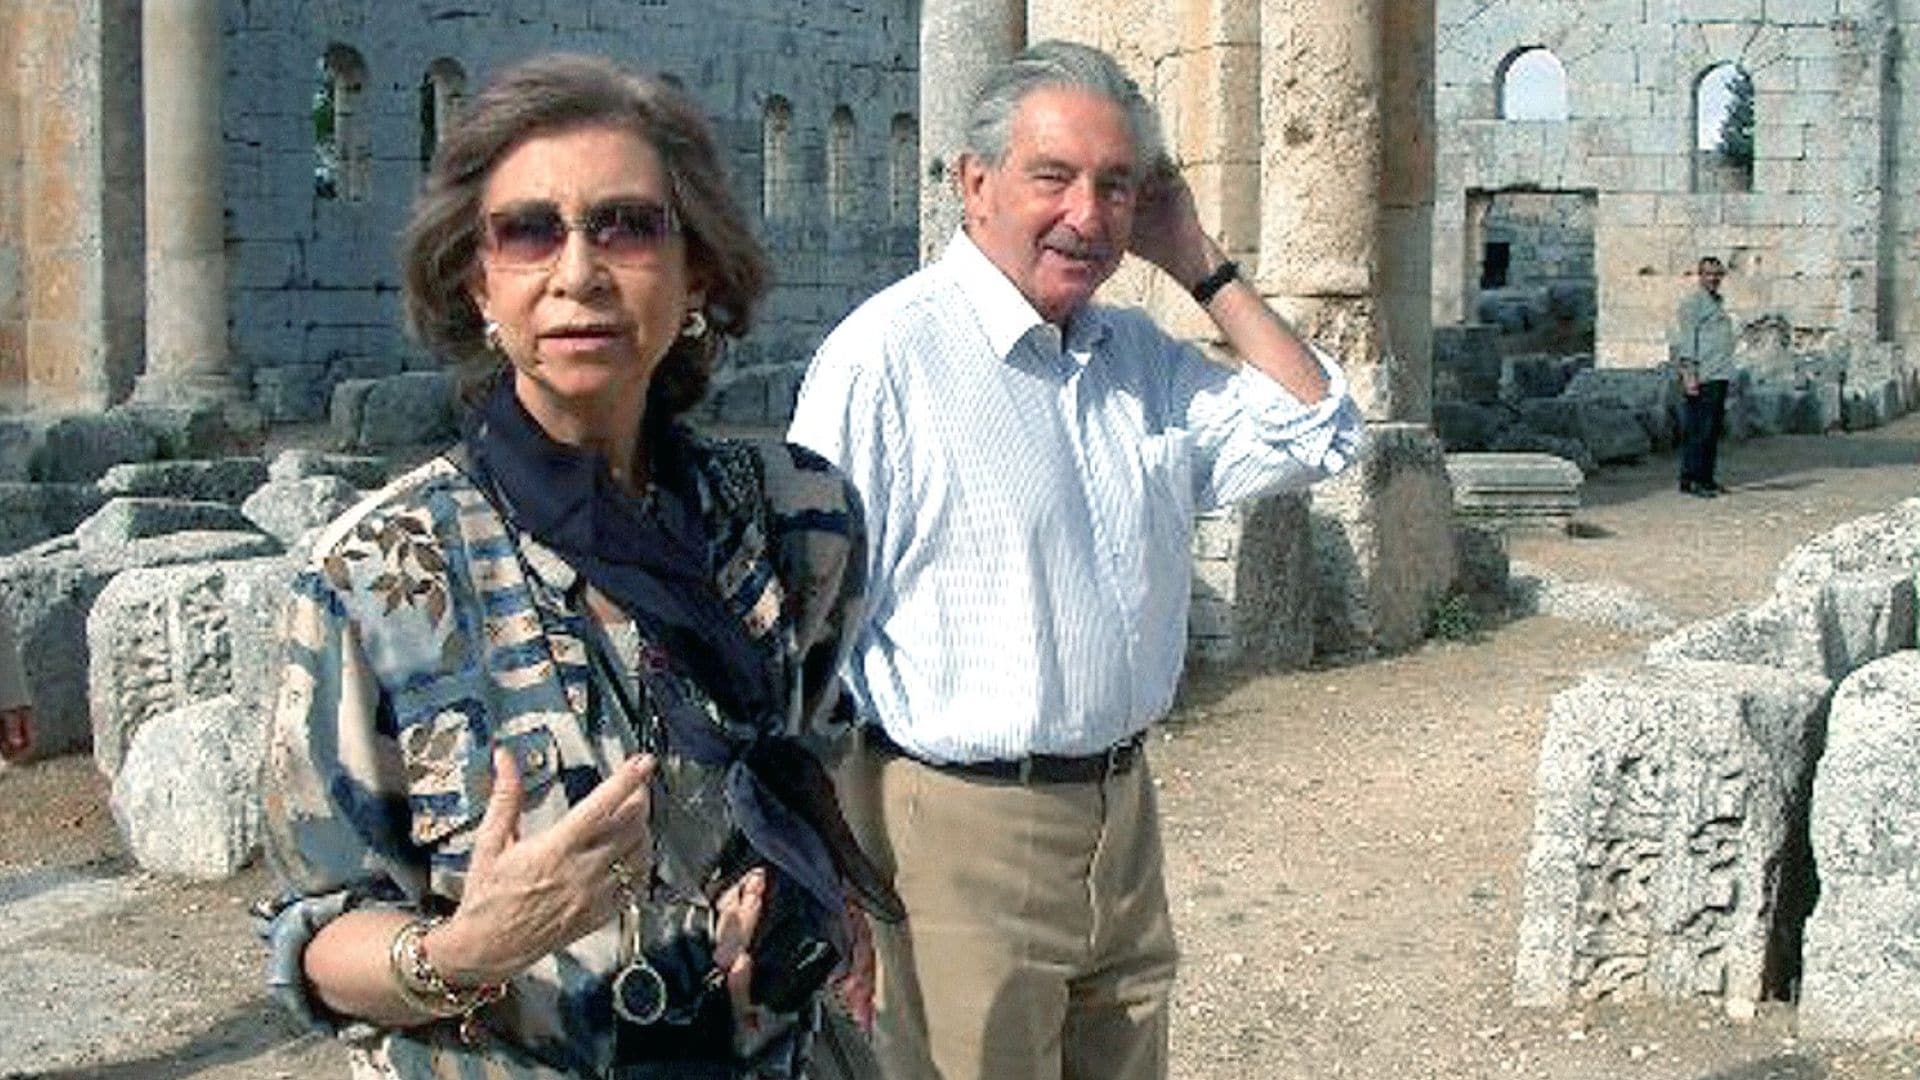 La reina Sofía durante una visita privada a Siria en compañía de su tío abuelo, el príncipe Miguel de Grecia